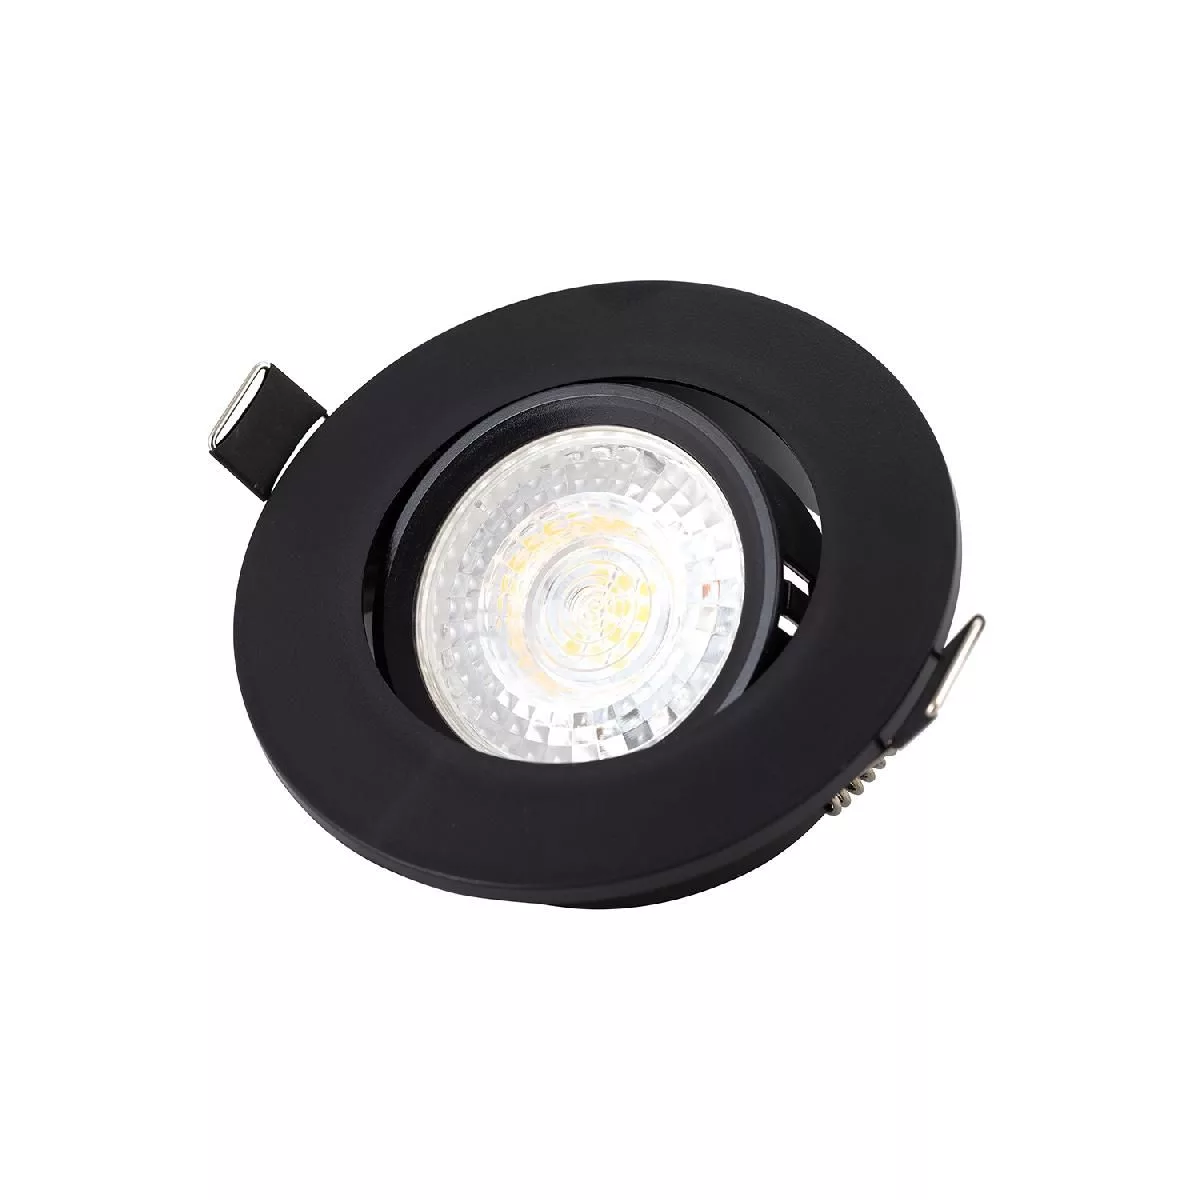 Встраиваемый светильник, IP 20, 10 Вт, GU5.3, LED, черный, пластик